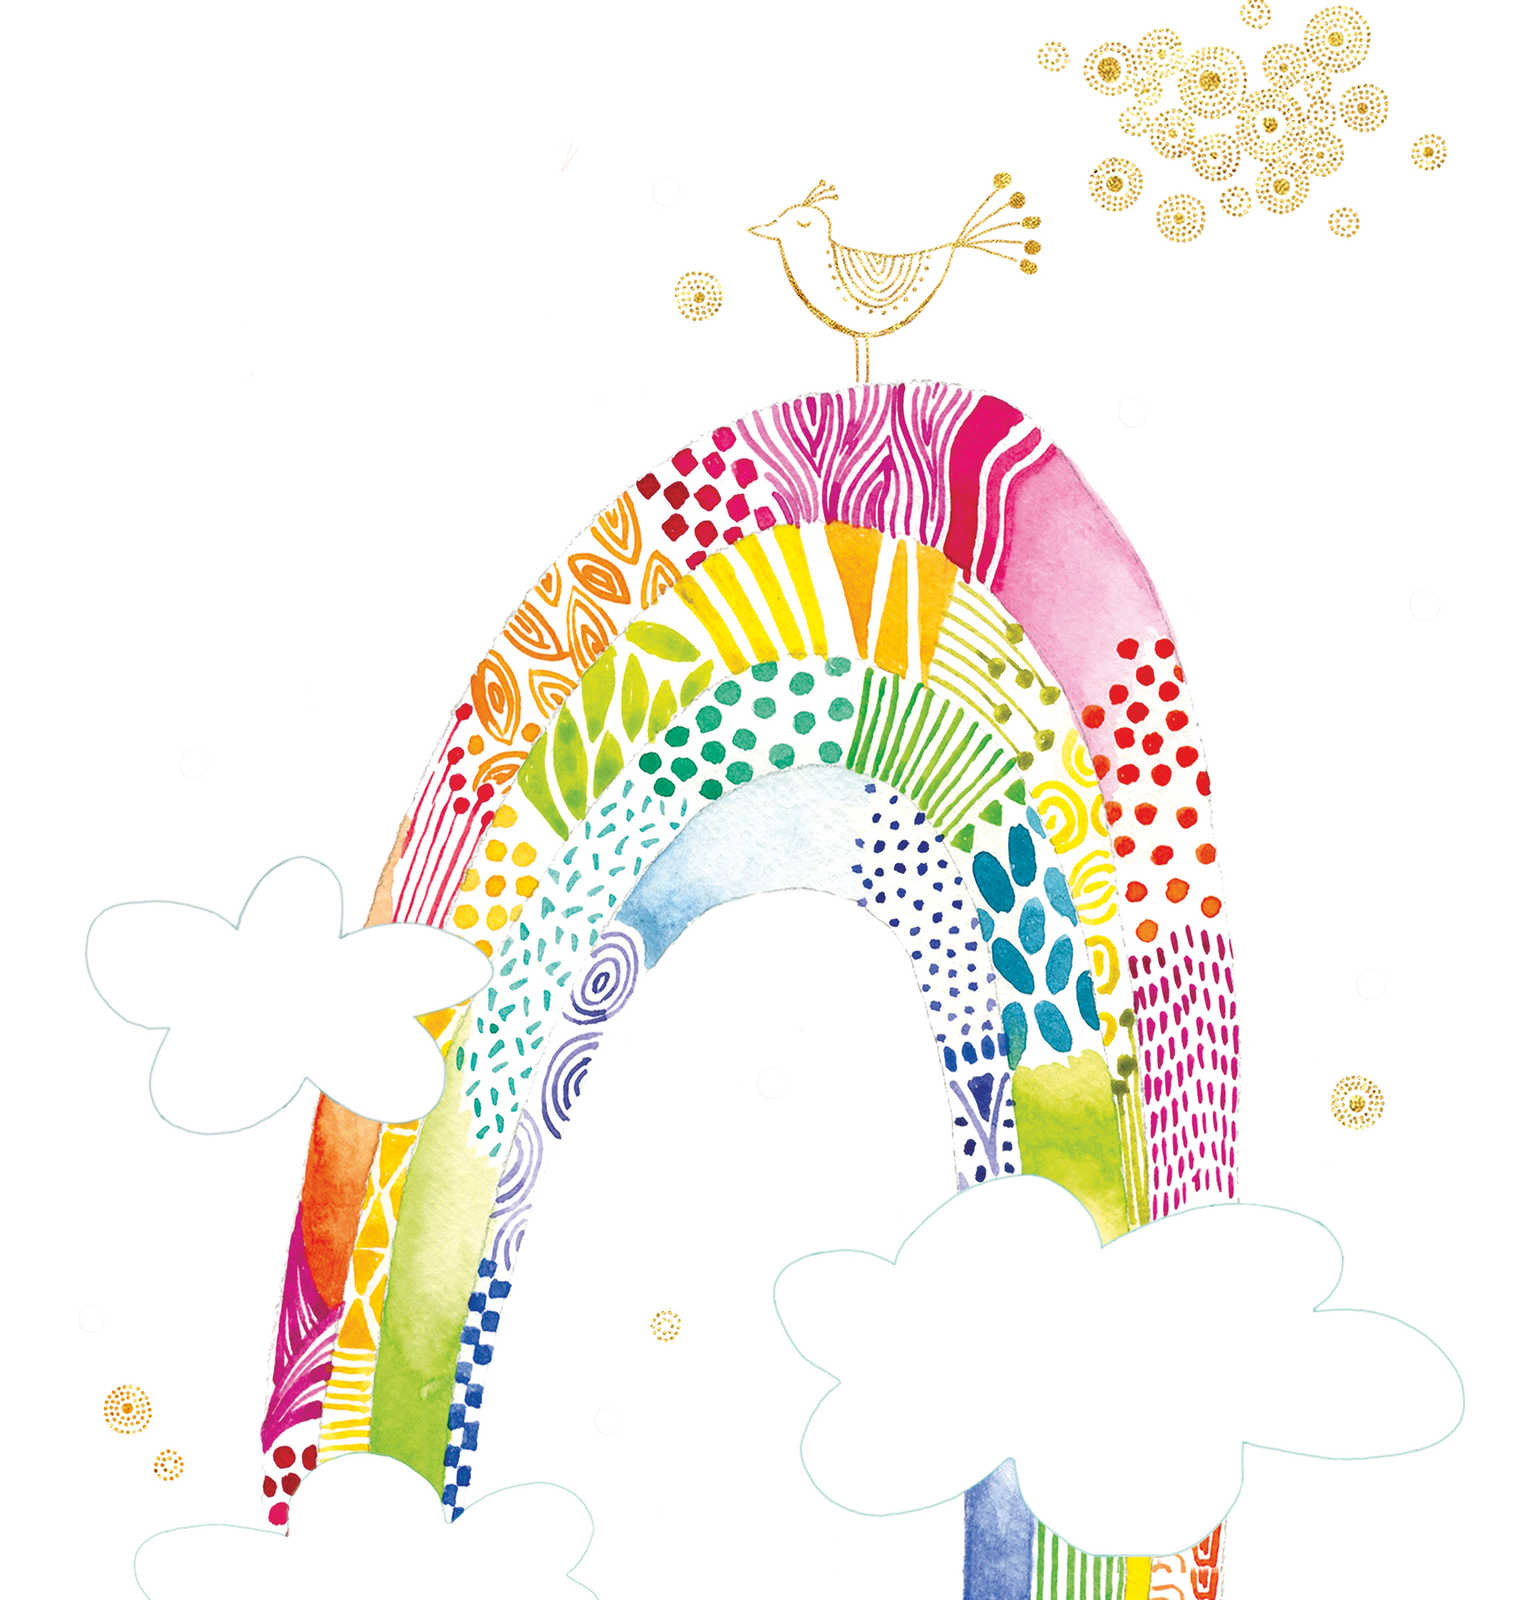             Kindermotief behang met kleurrijke regenboog en vogel - kleurrijk, wit, roze
        